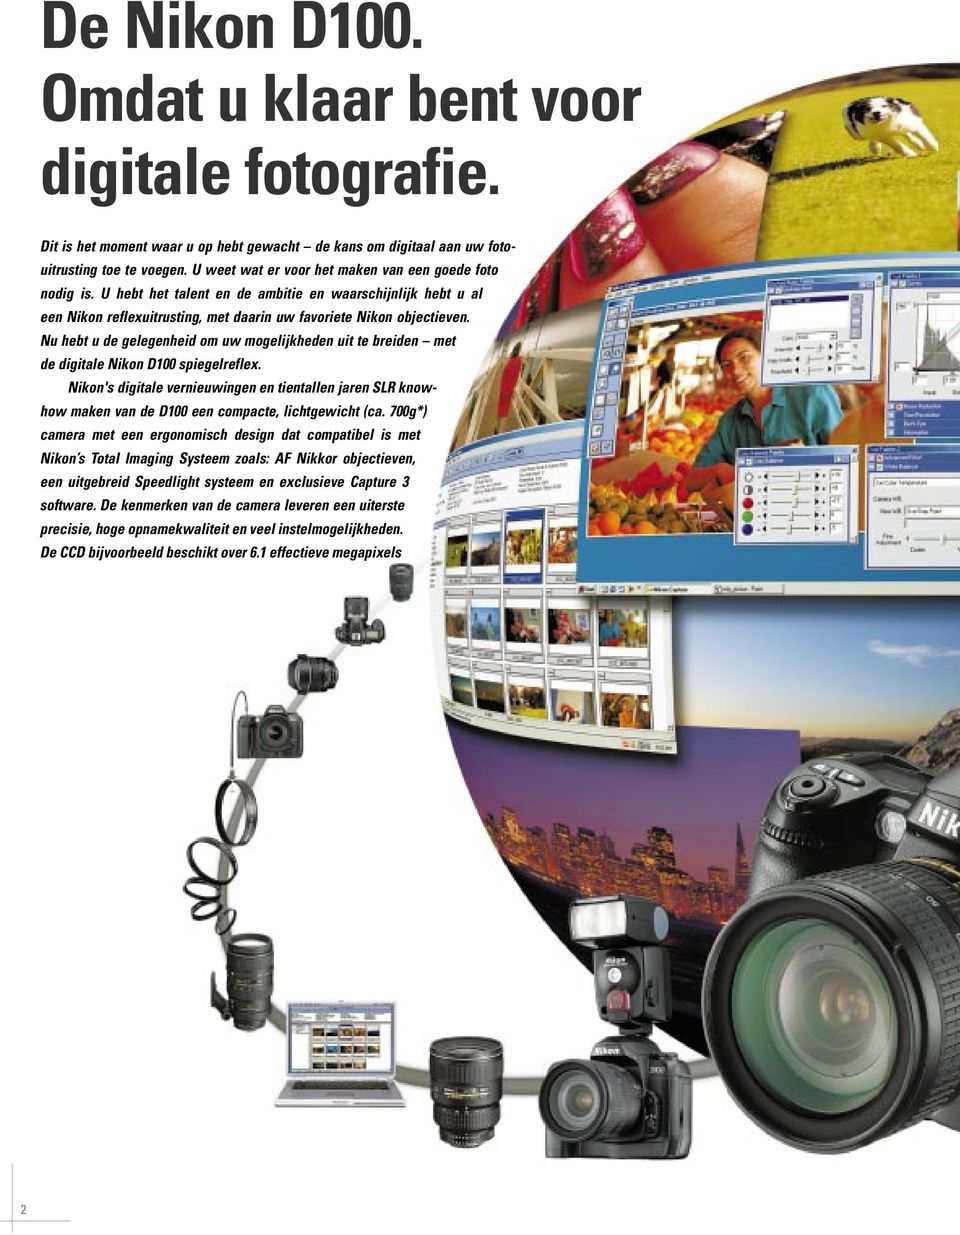 Nu hebt u de gelegenheid om uw mogelijkheden uit te breiden met de digitale Nikon D100 spiegelreflex.